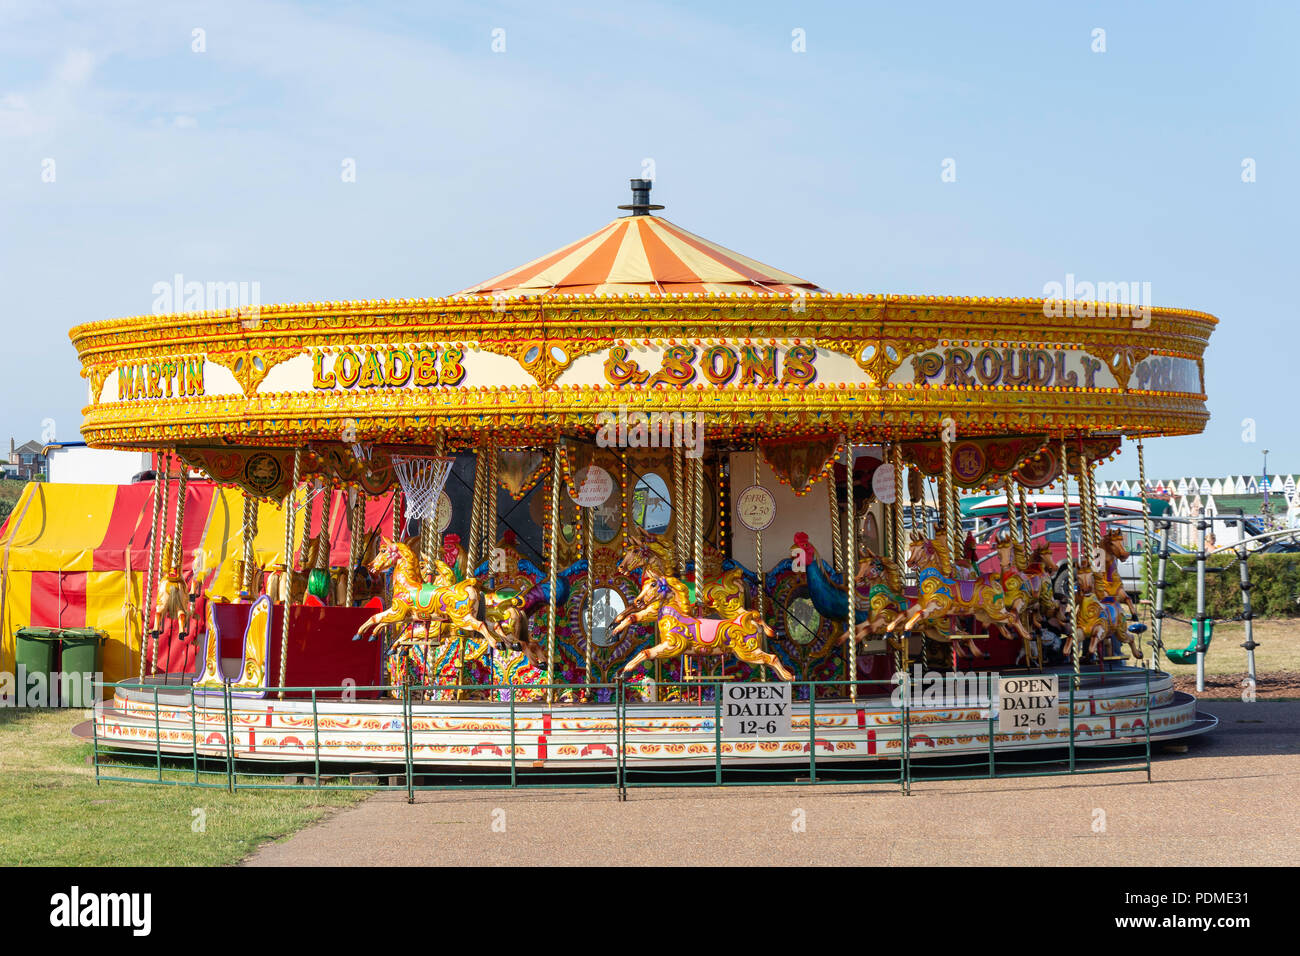 Carrousel pour enfants sur la plage, promenade, Southwold, Suffolk, Angleterre, Royaume-Uni Banque D'Images